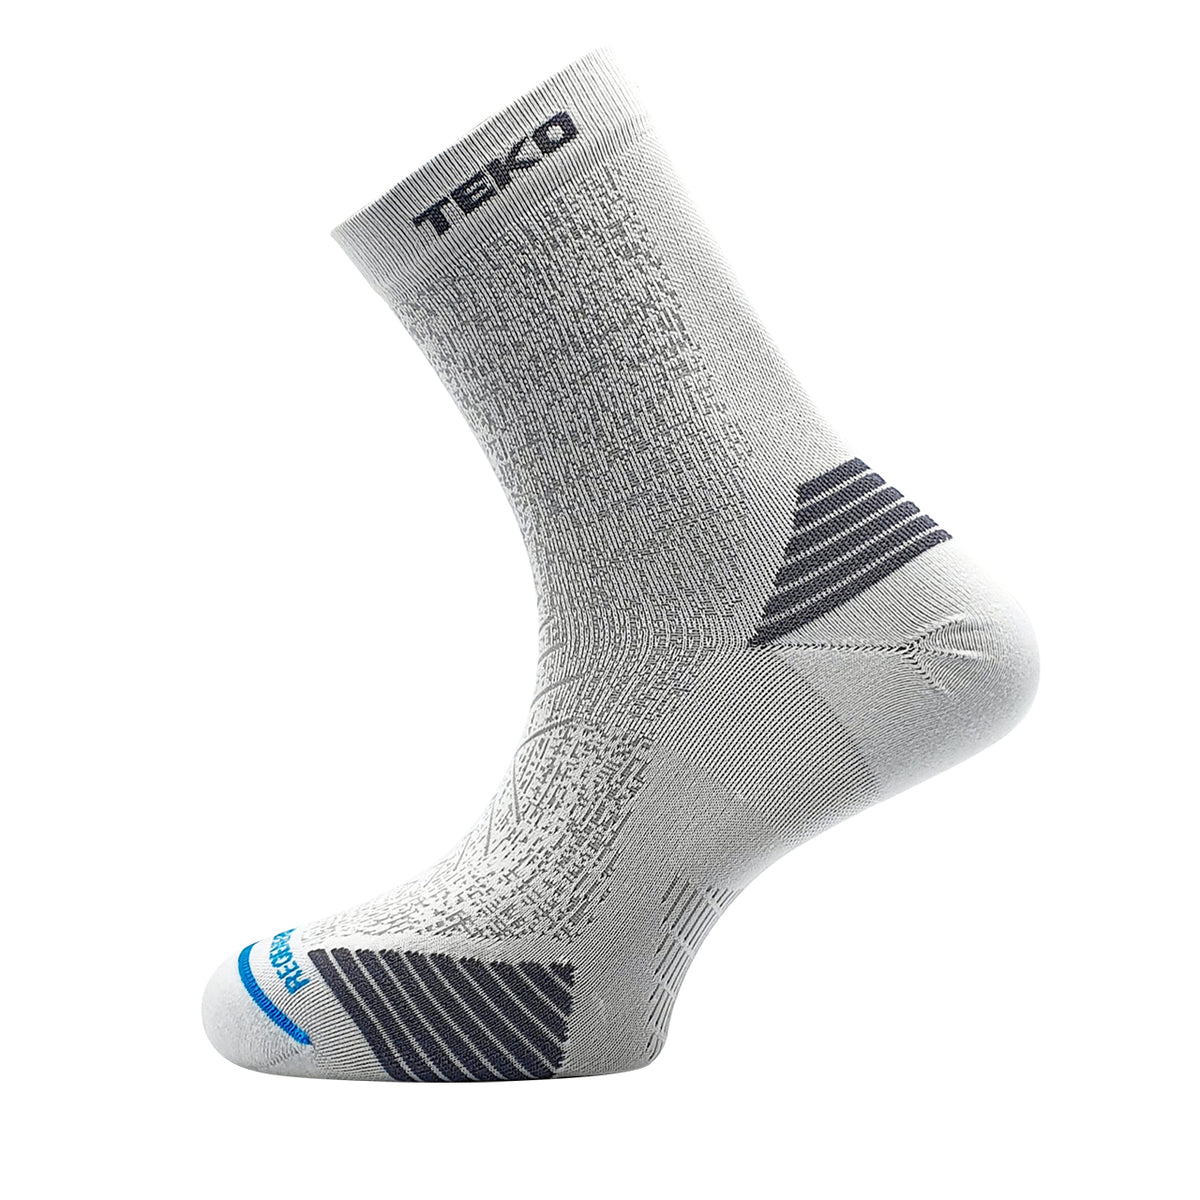 TEKO eco RUN 2.0 SHORT CREW Light Half Cushion Running Socks